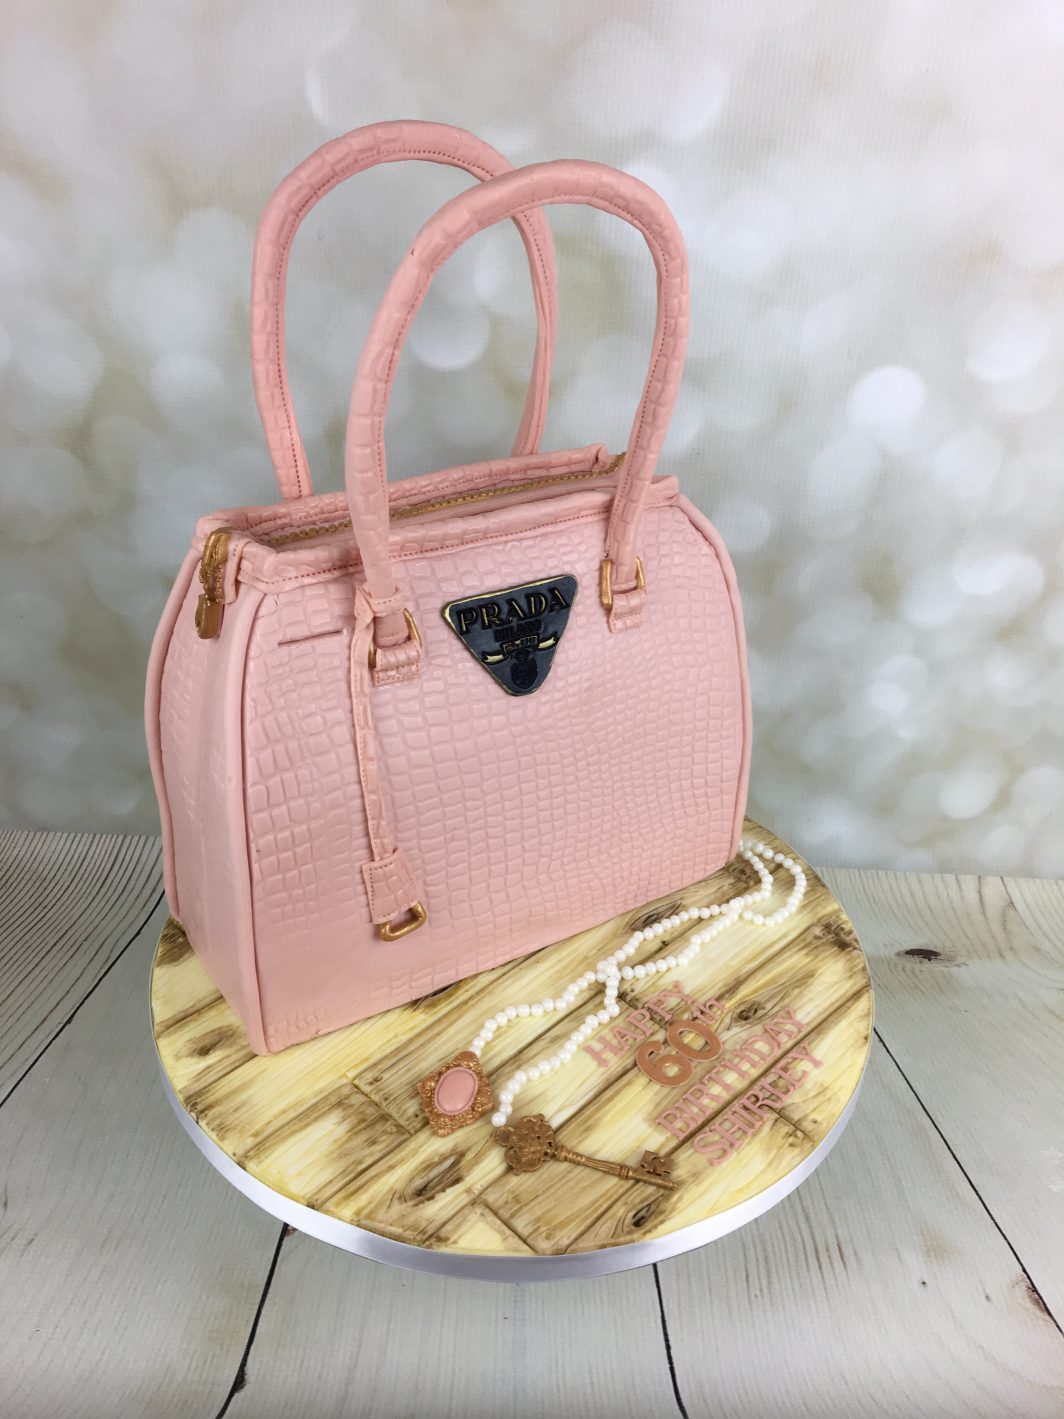 Pink bag cake